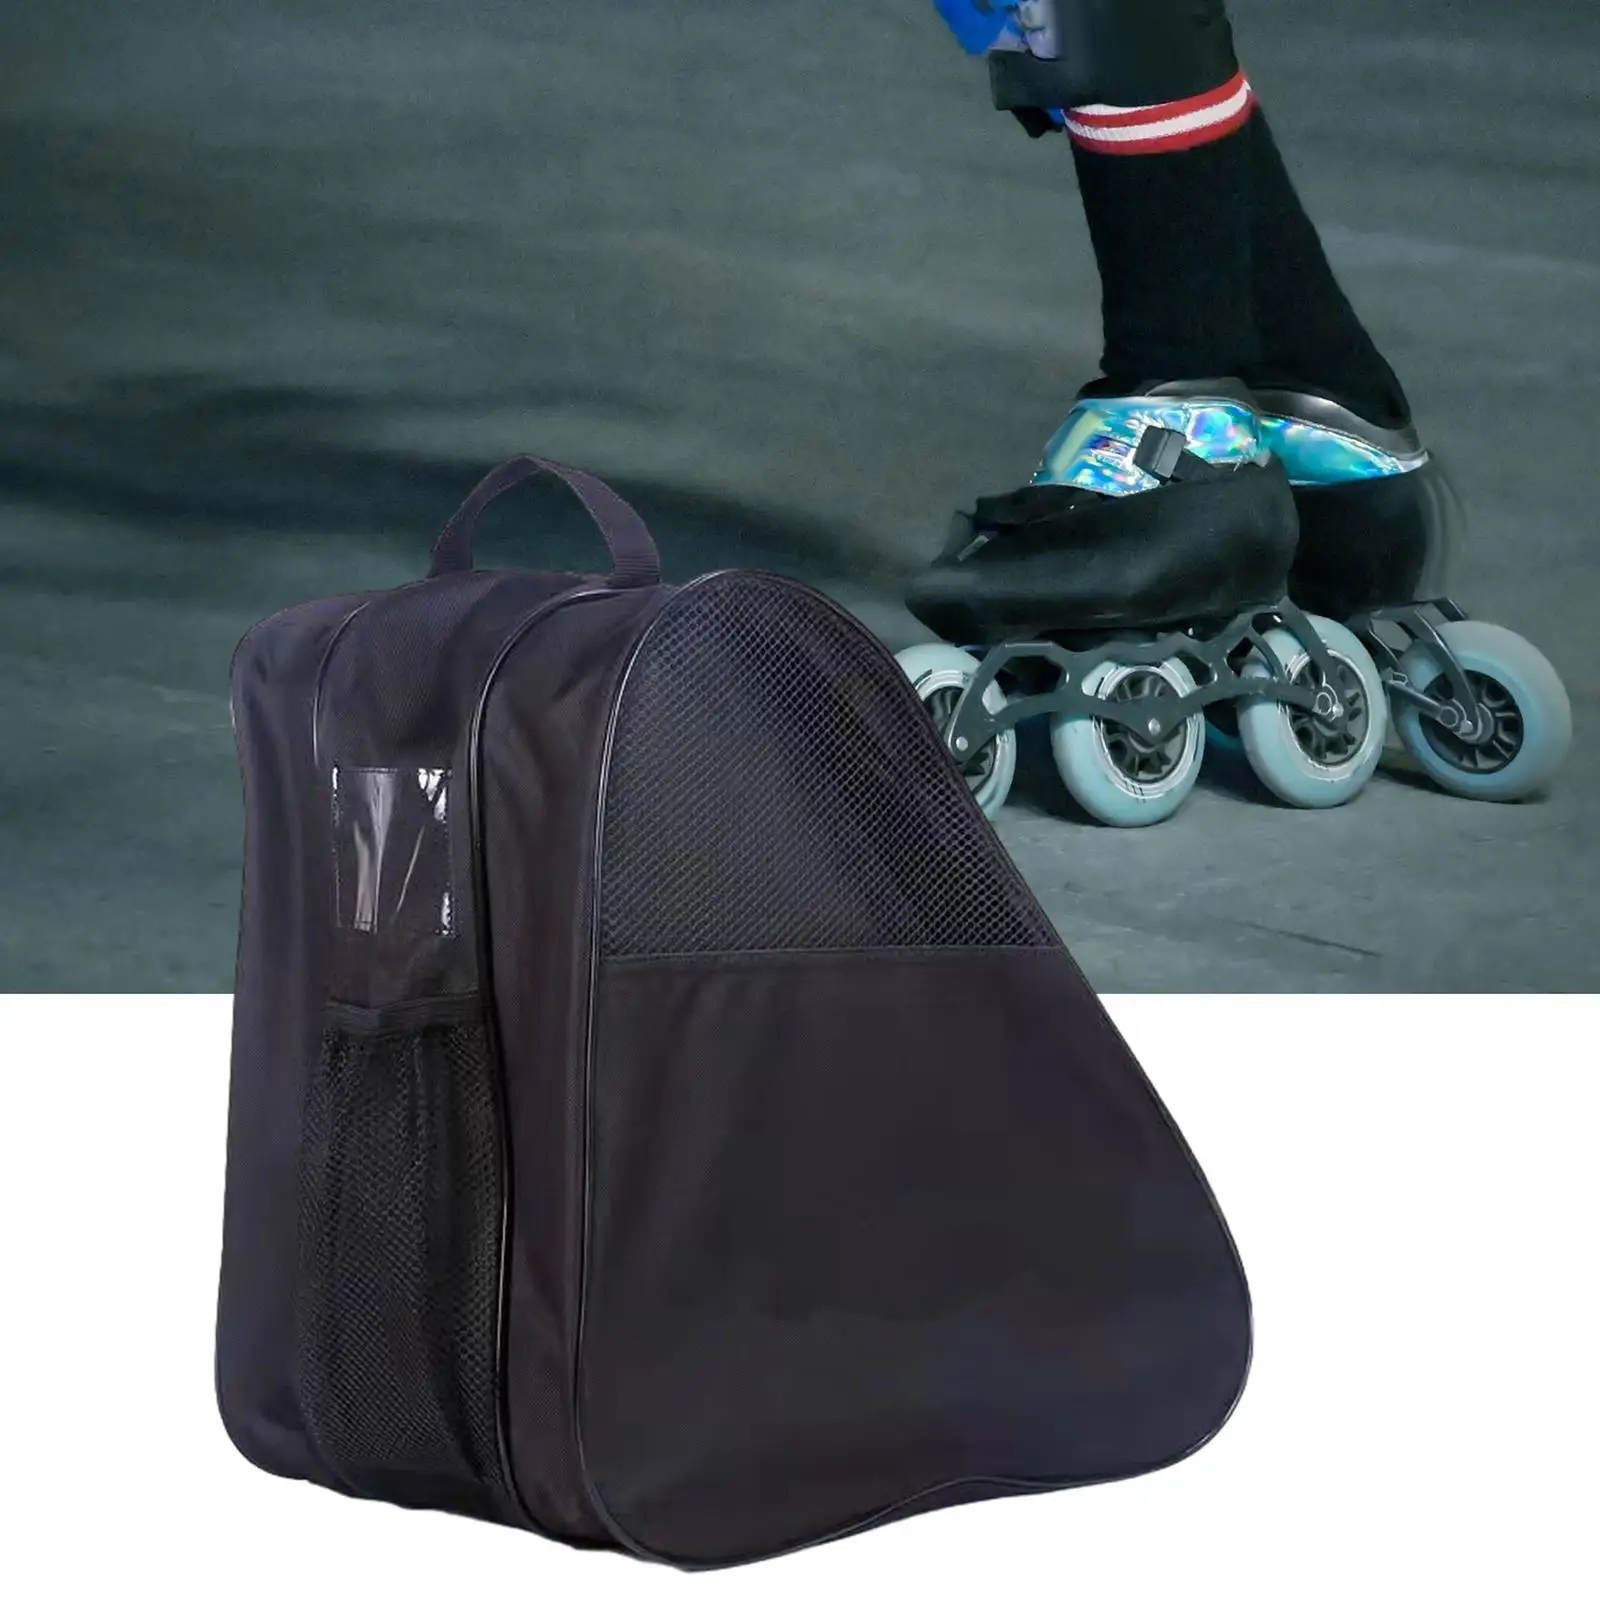 Roller Skate Bag Inline Skates Portable Oxford Cloth Skating Accessories with Adjustable Shoulder Strap Handle Skate Carry Bag